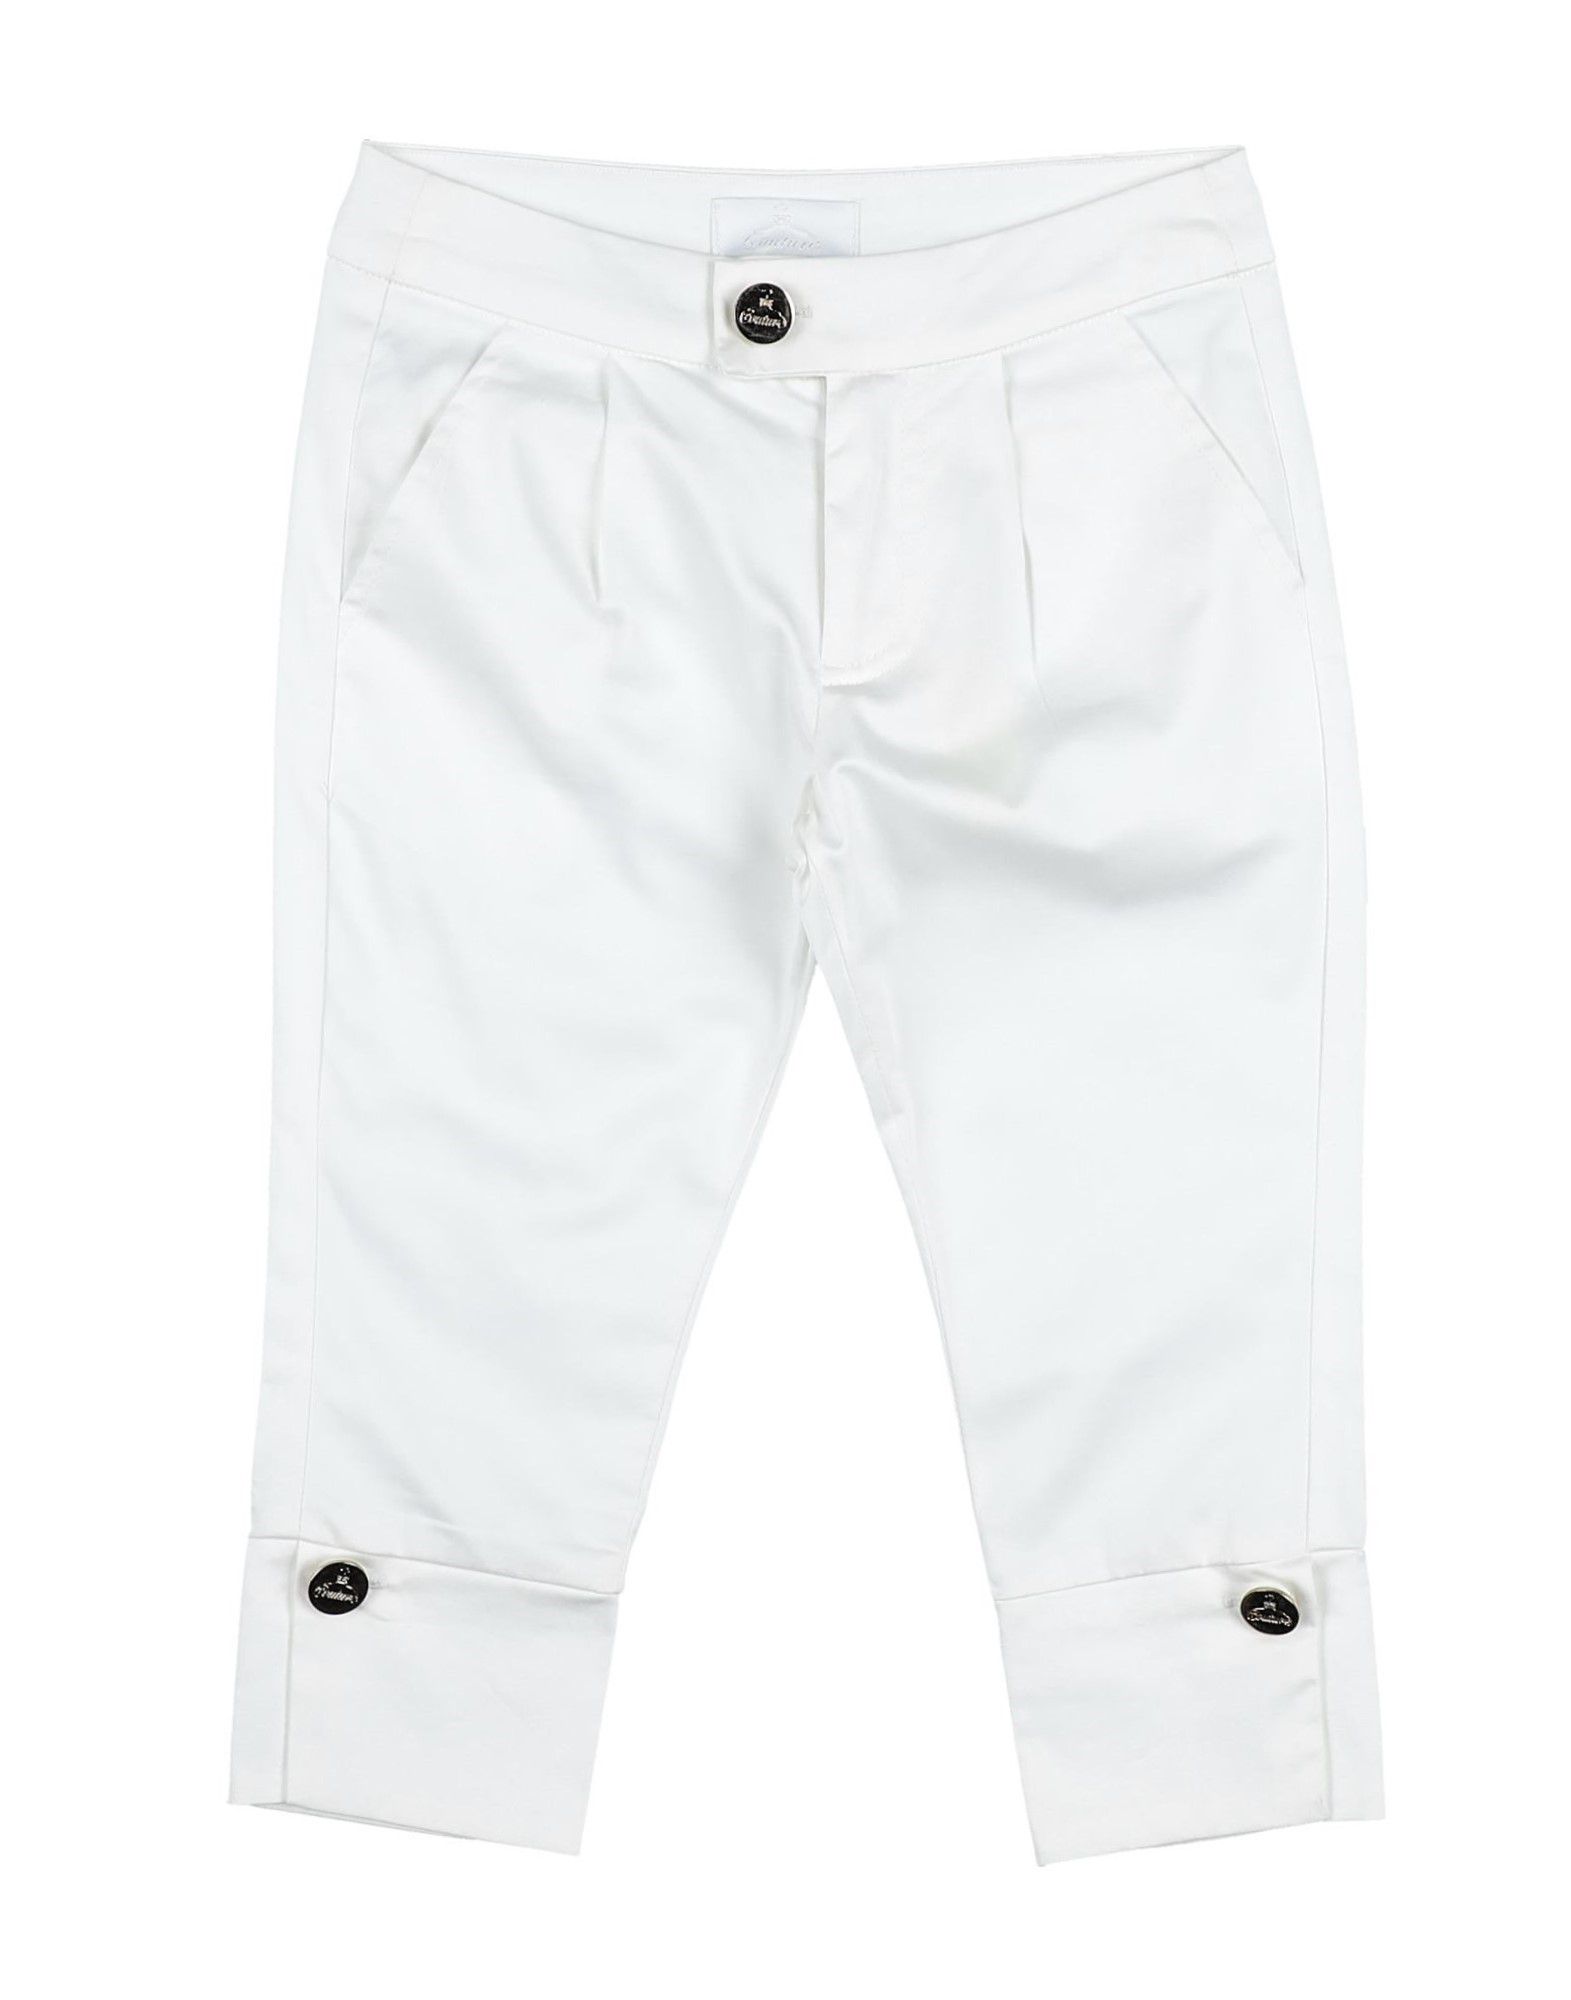 Fun & Fun Kids' Pants In White